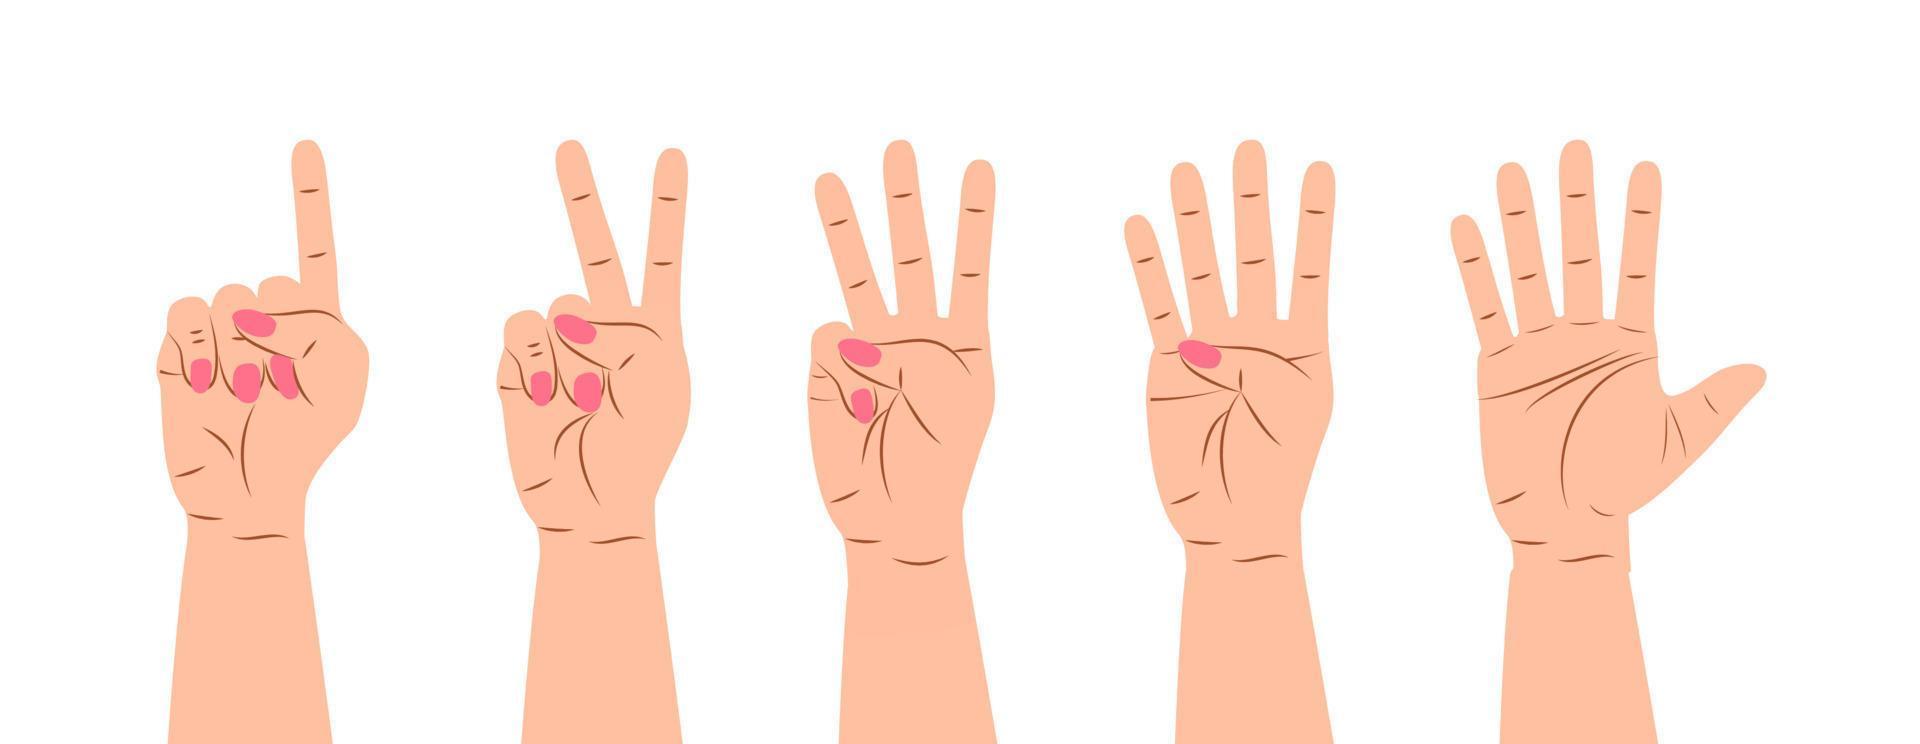 vecteur de signe de geste de la main. ensemble de compter sur les doigts. cinq icônes de poignet avec nombre de doigts en style cartoon.